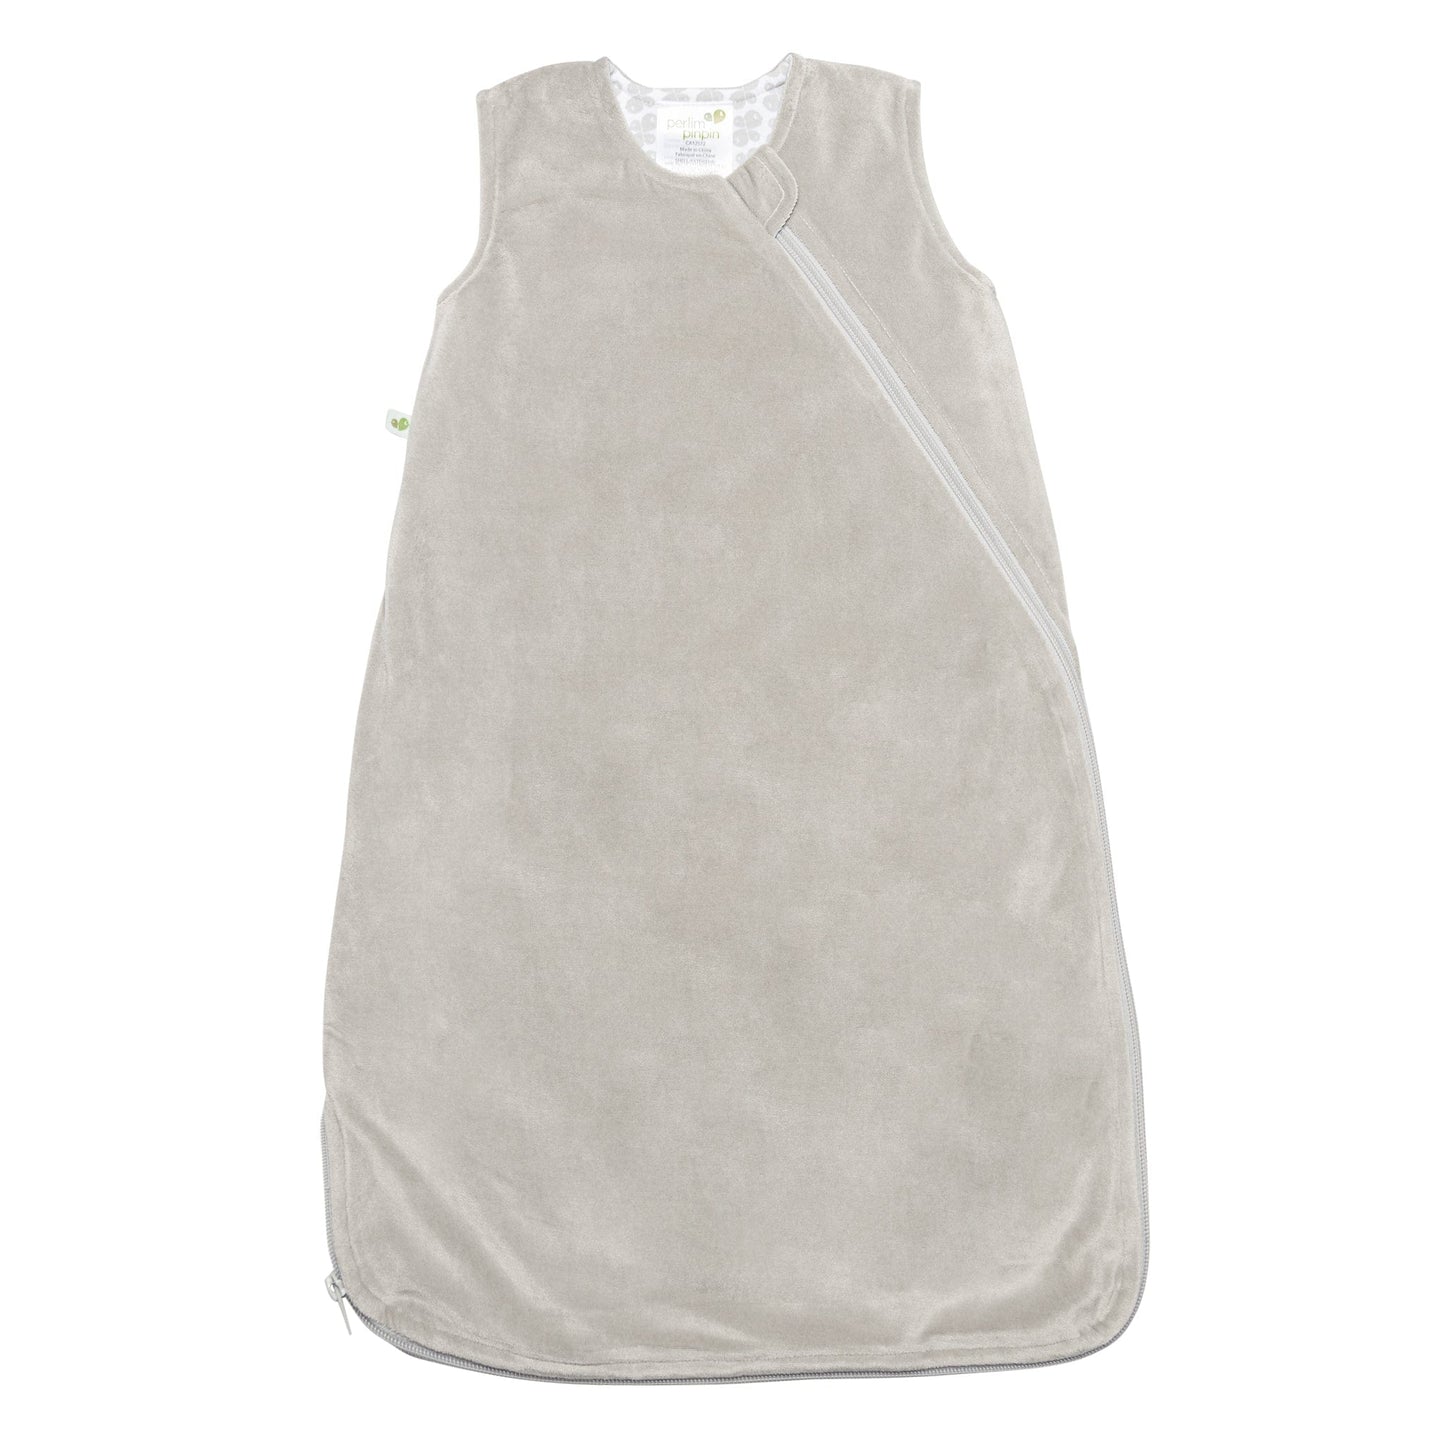 Velour sleep bag - Taupe (2.5 Togs)